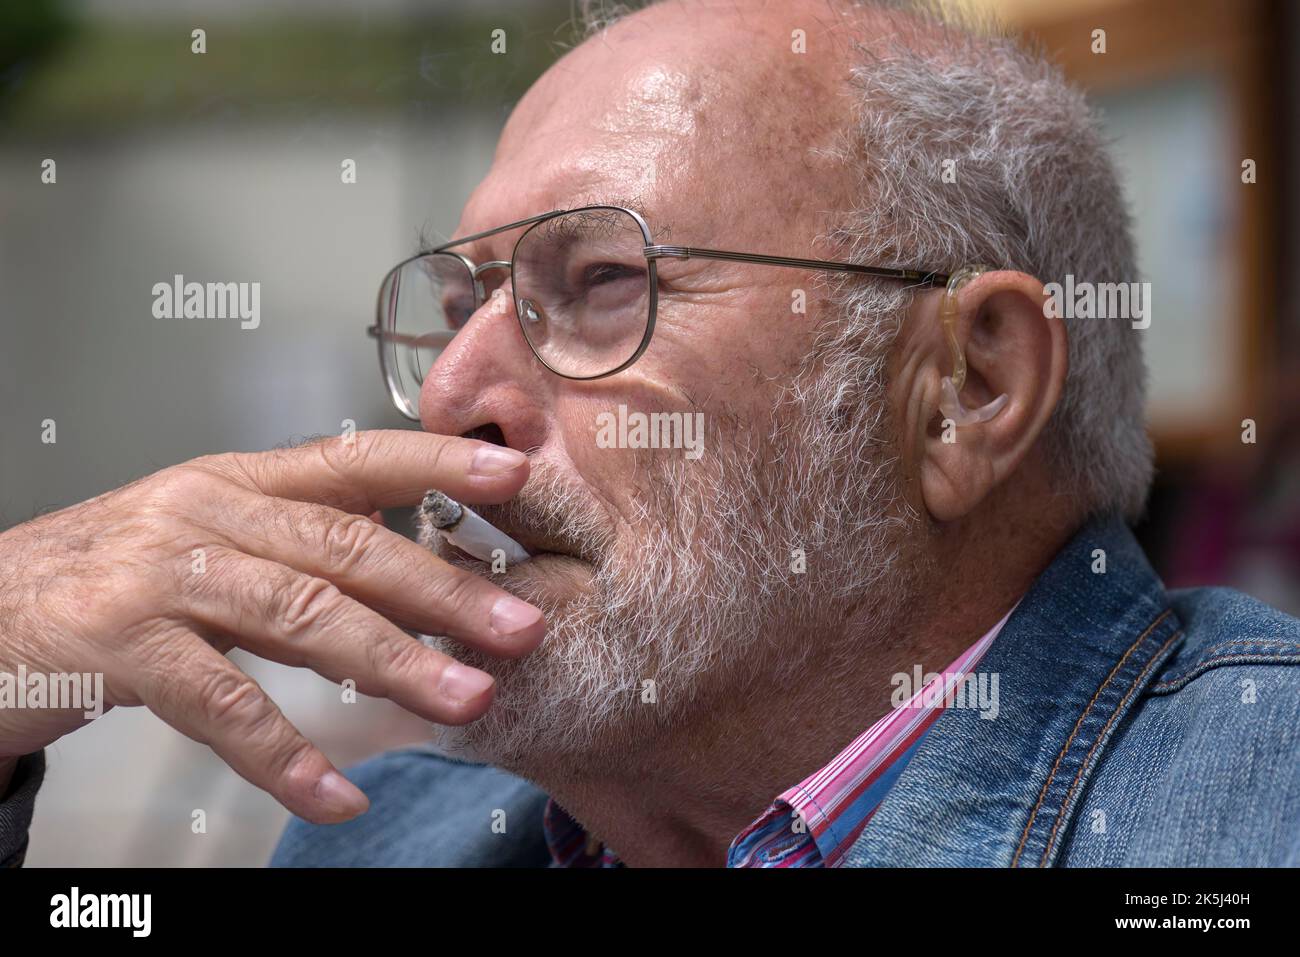 Ritratto di un Signore fumatore con barba e apparecchi acustici in orecchio, Baviera, Germania Foto Stock